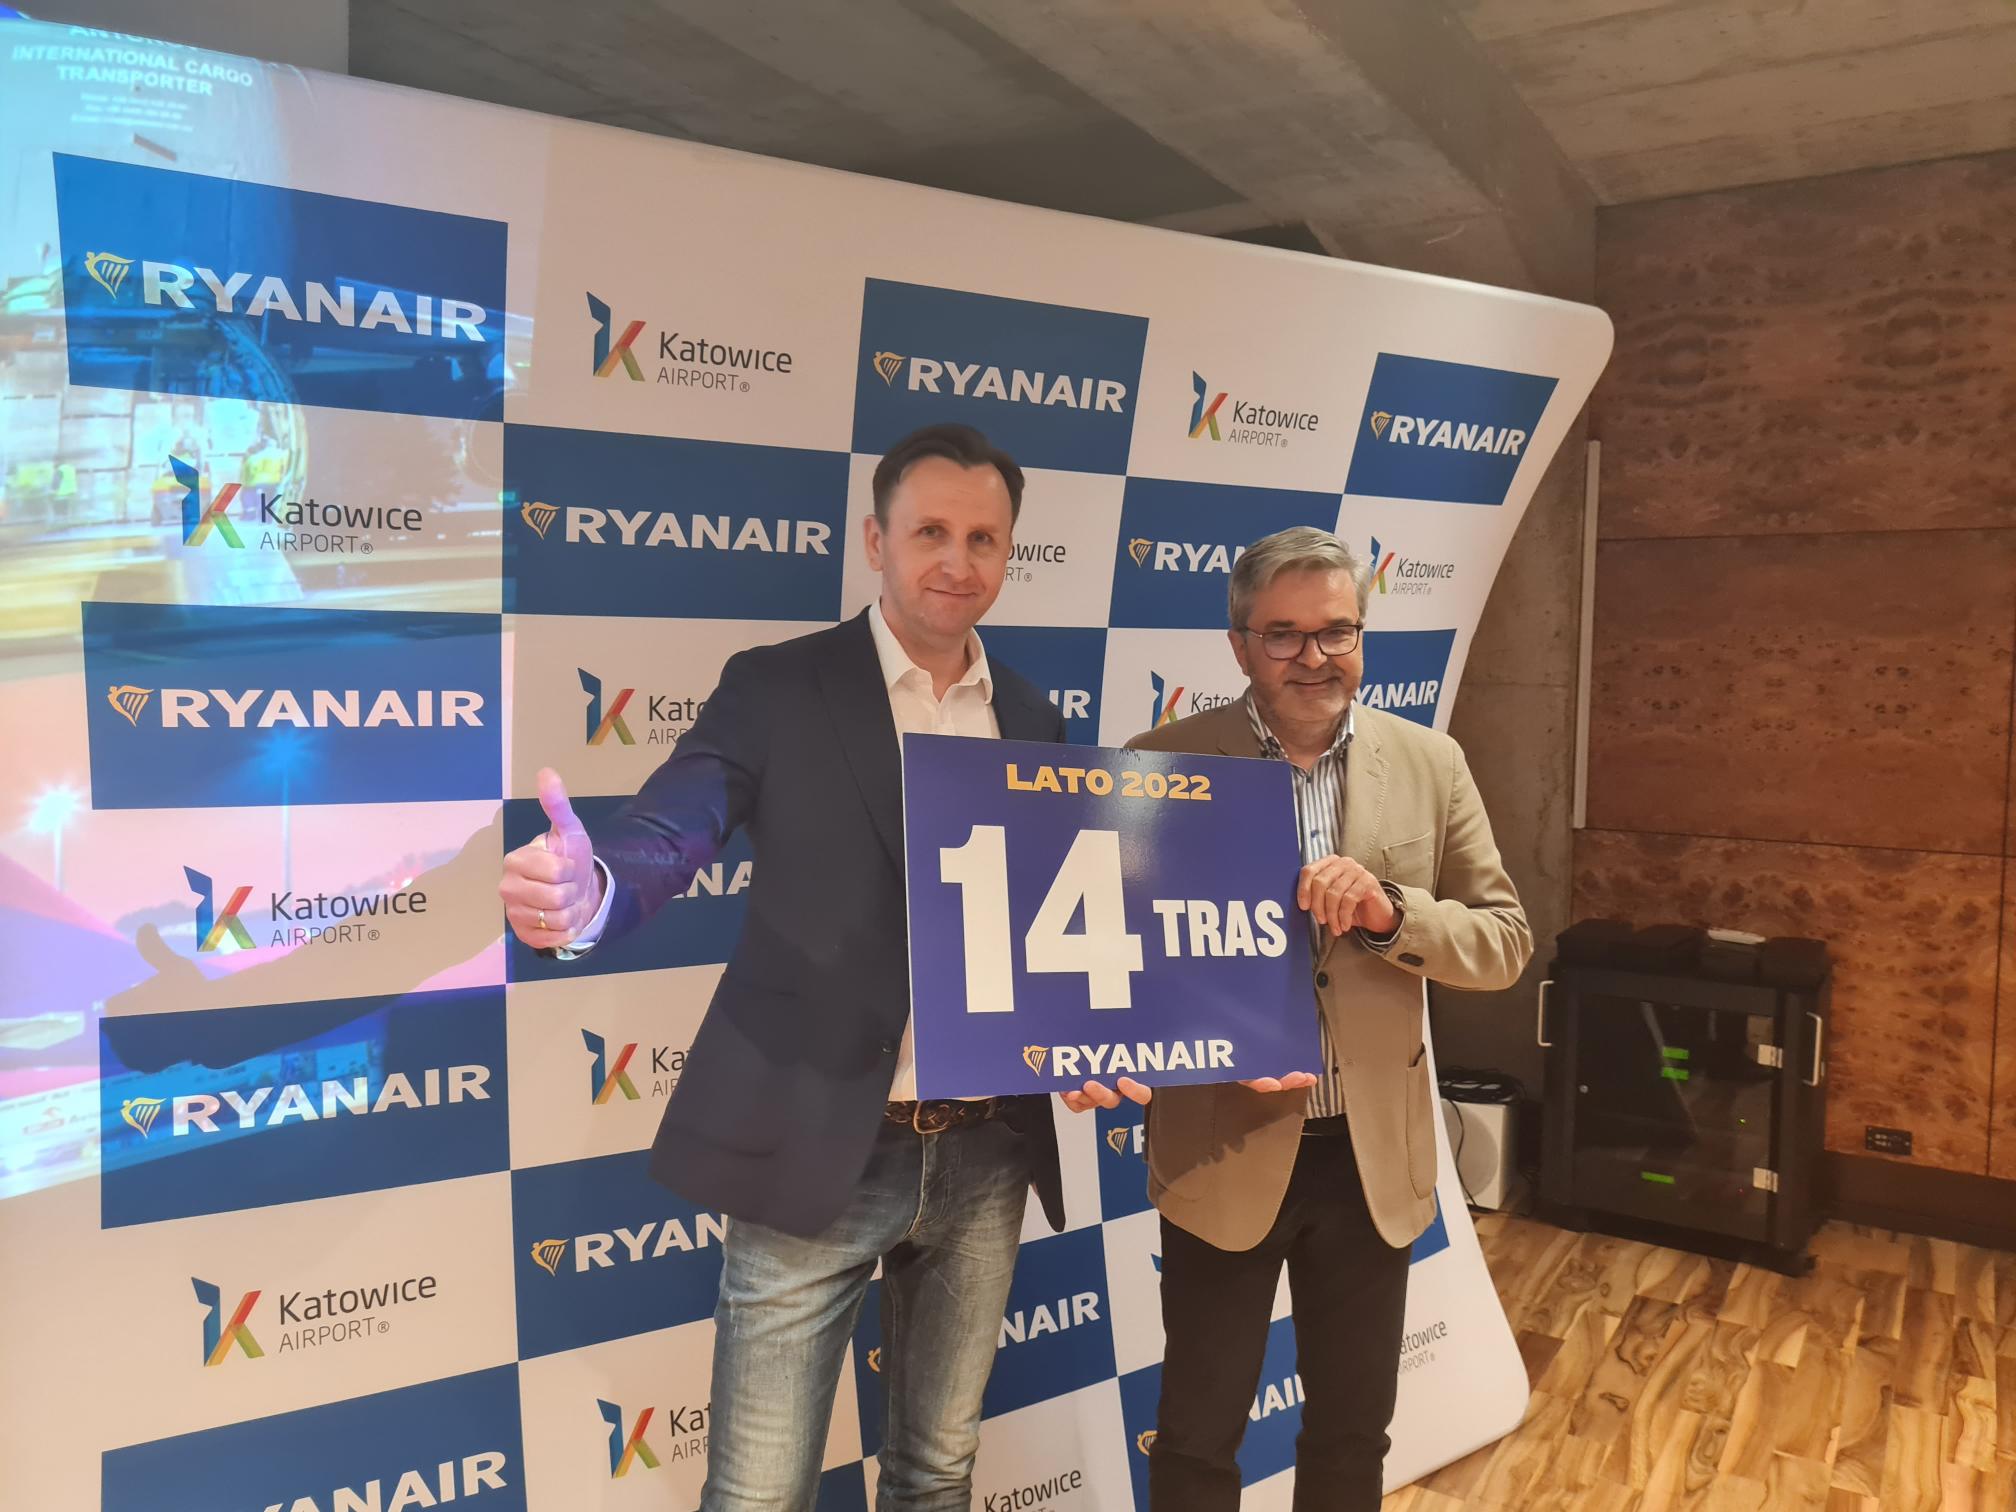 Ryanair Świętuje 15-Lecie Operacji W Katowice Airport I Ogłasza Największy W Historii Rozkład Lotów Na Lato 2022